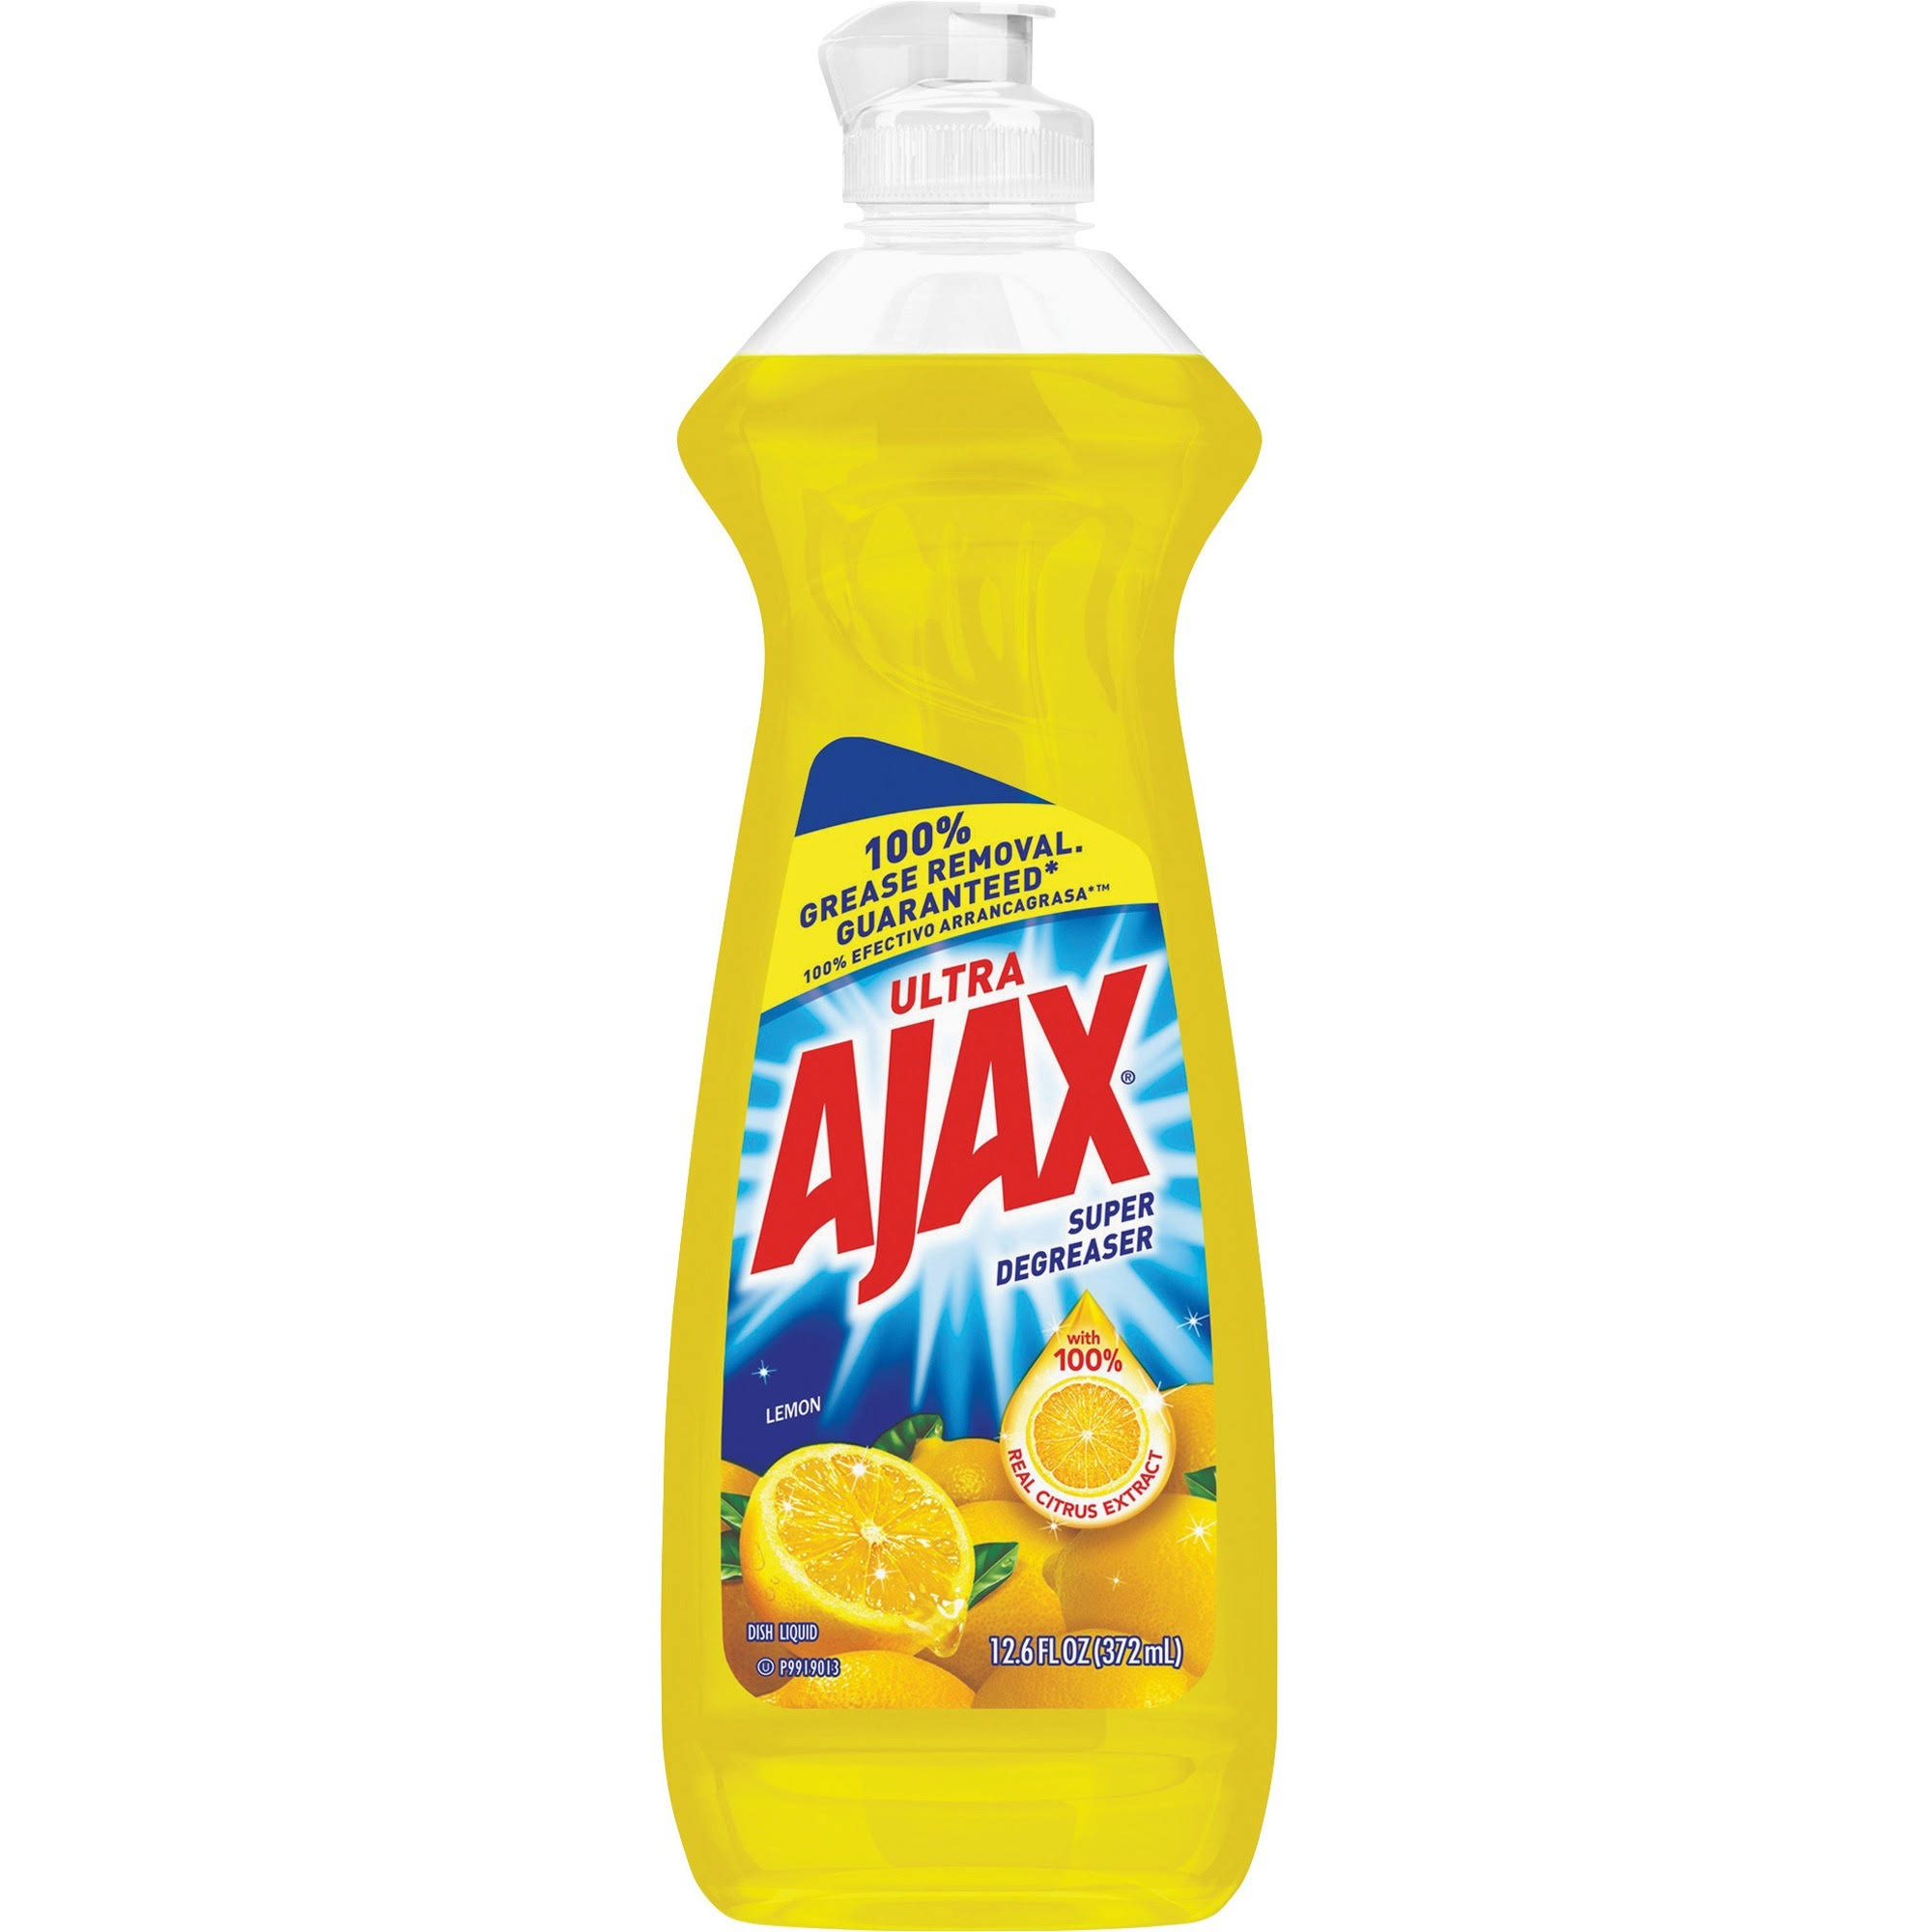 Ajax Liquid Dish Soap - Lemon, 370ml